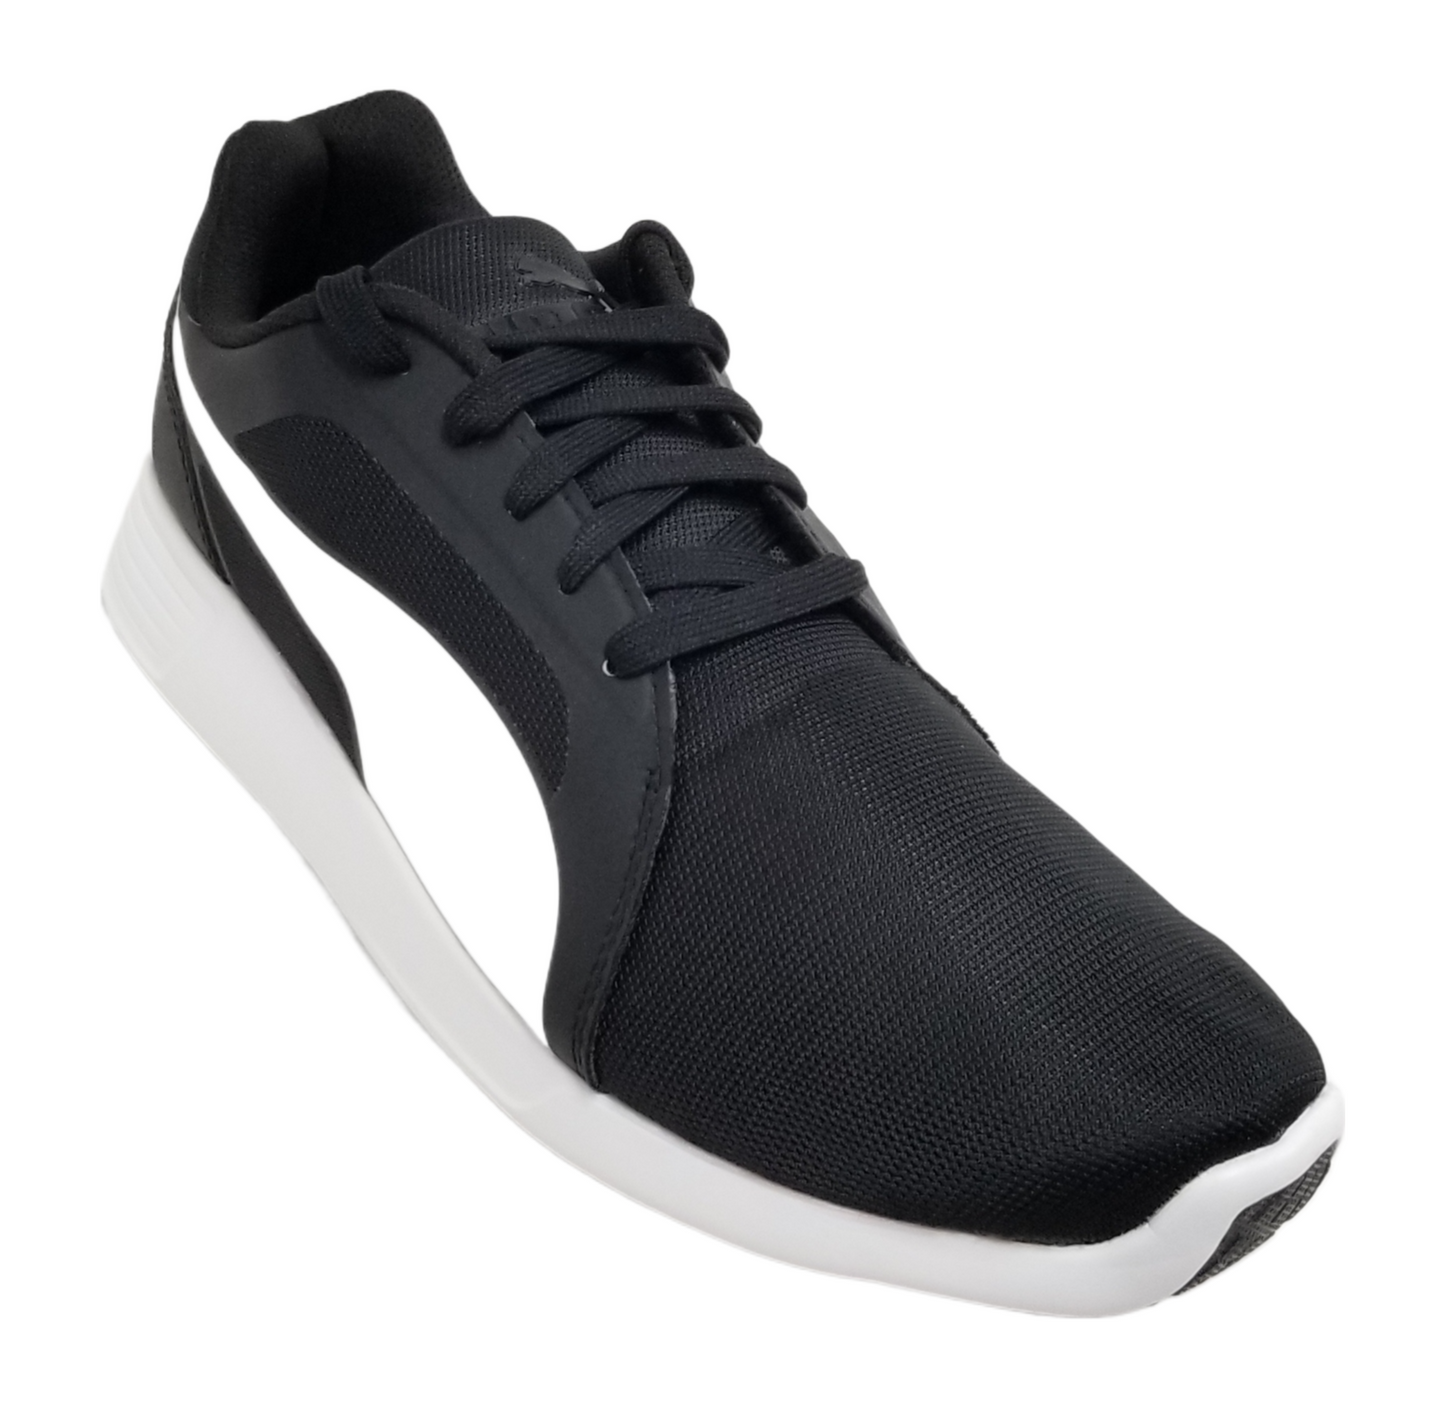 Puma Men ST Trainer Evo Shoes Black-White 359904-01